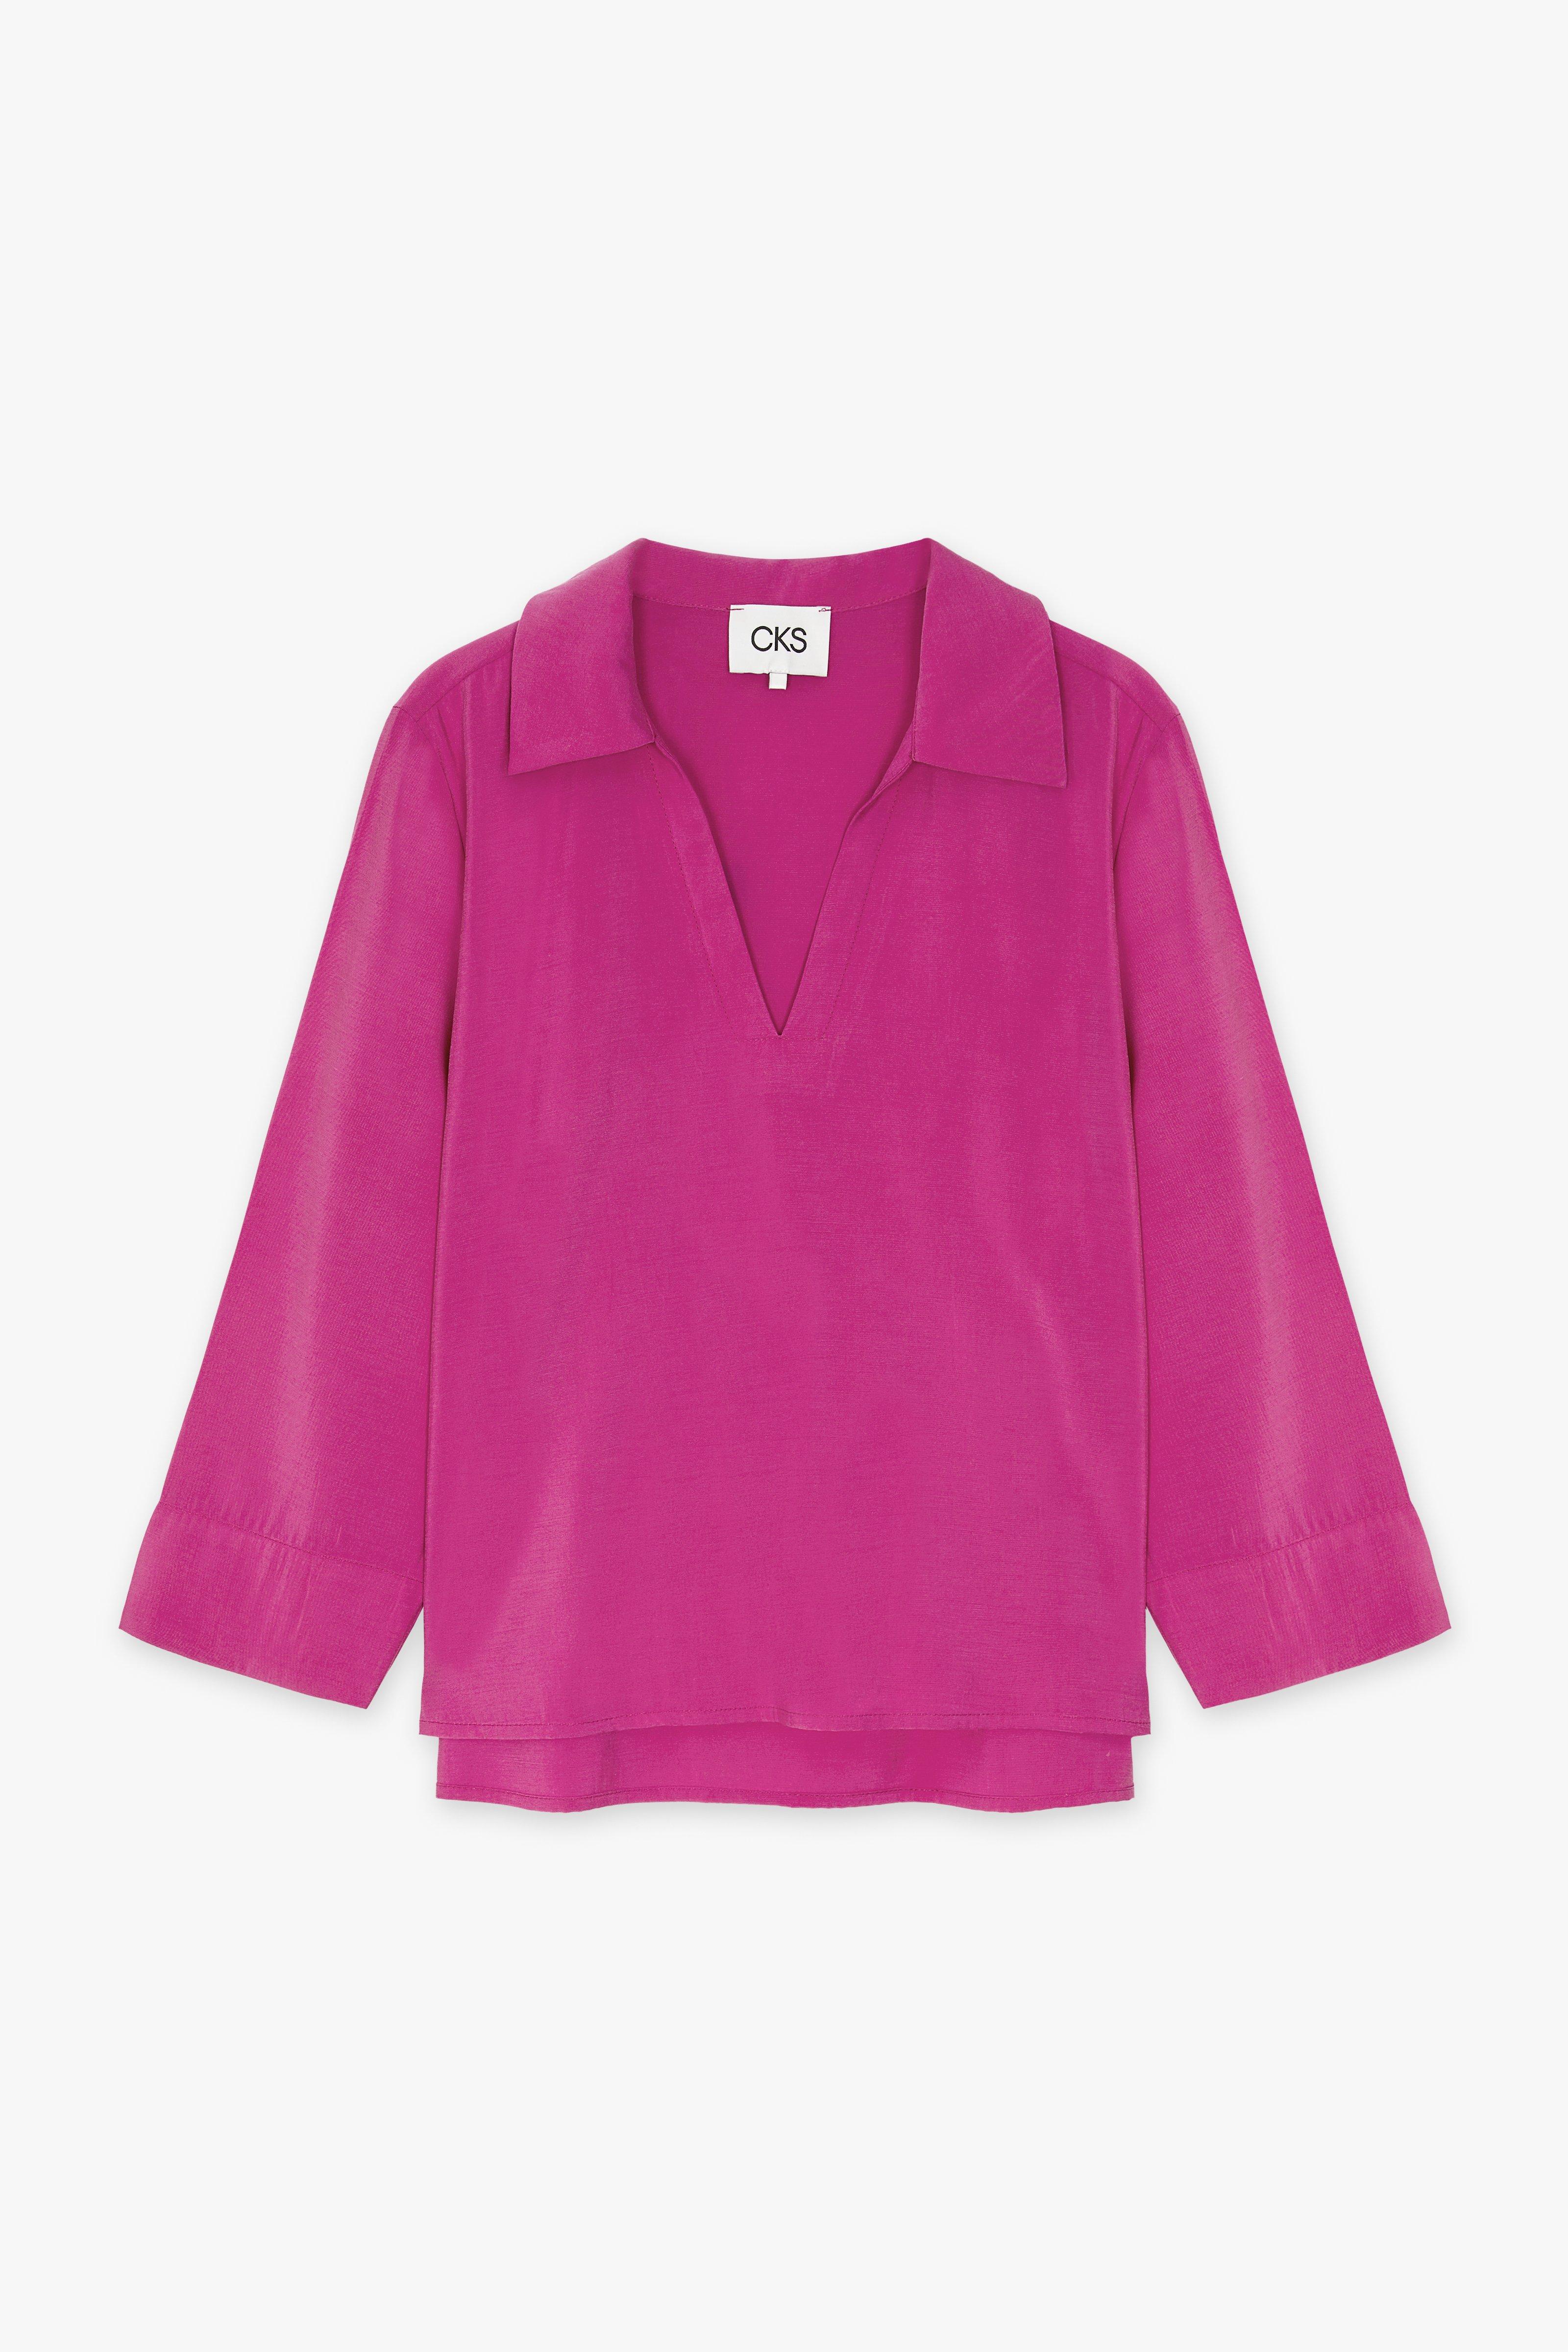 CKS Dames - SOLEDO - blouse lange mouwen - roze